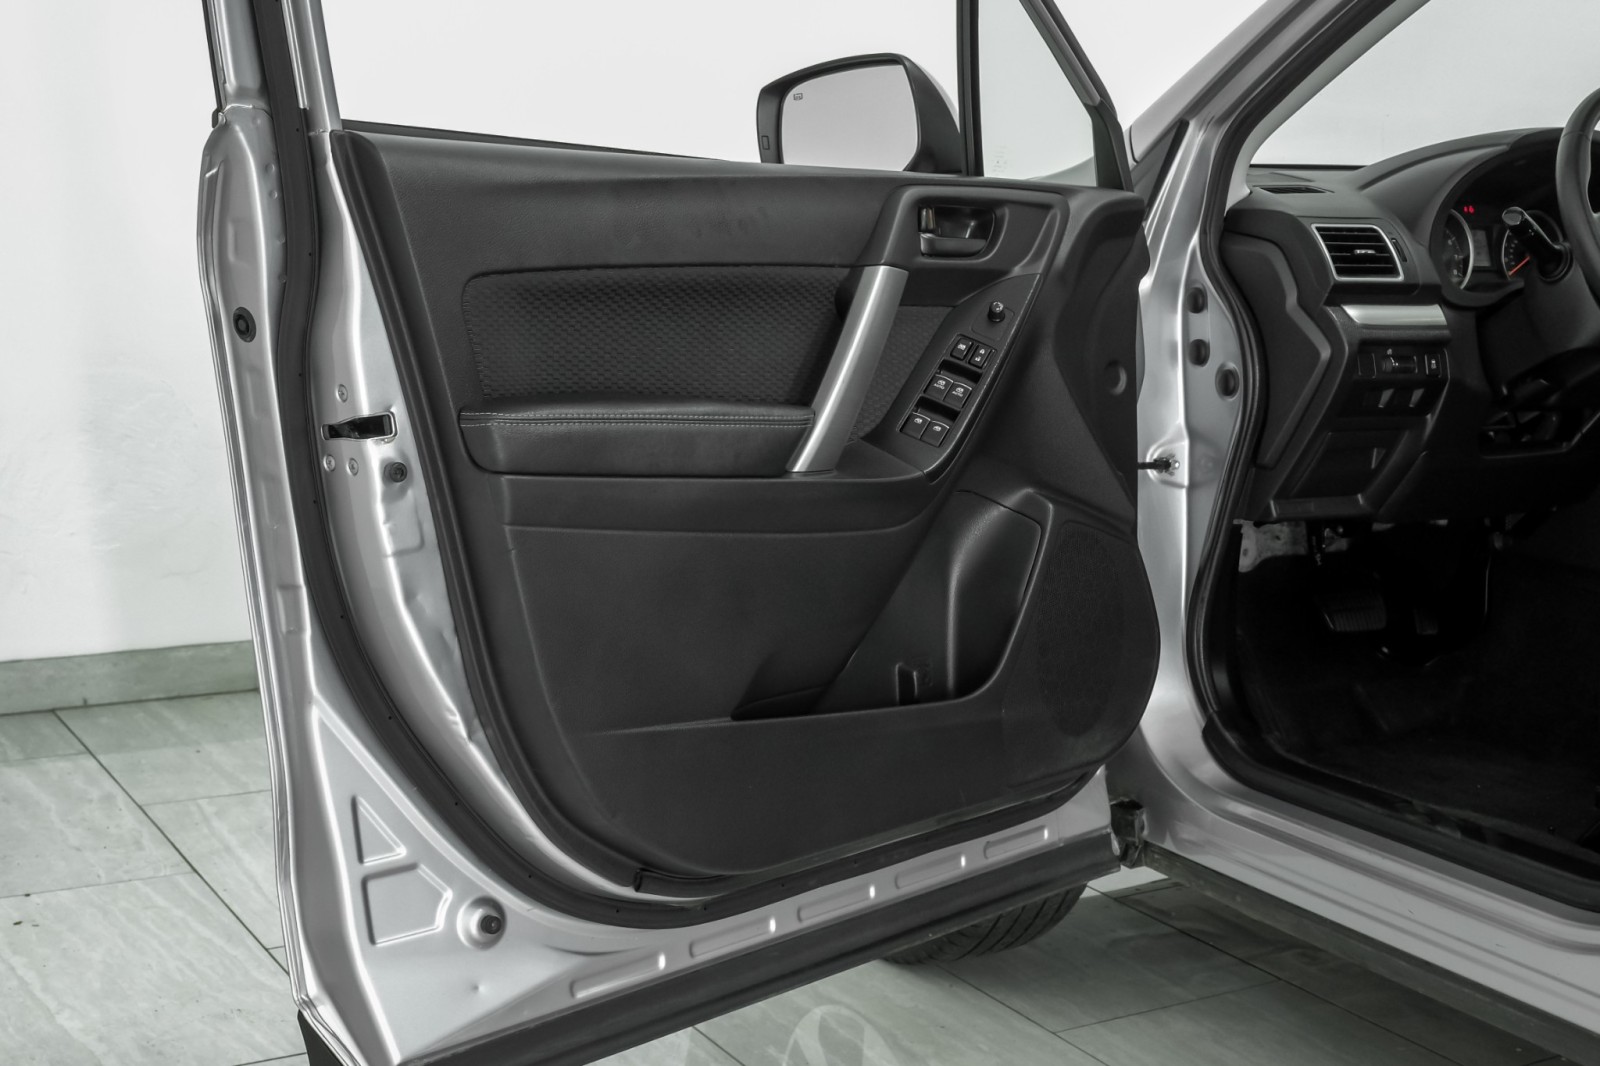 2018 Subaru Forester 2.5i PREMIUM AWD AUTOMATIC SUNROOF HEATED SEATS RE 43